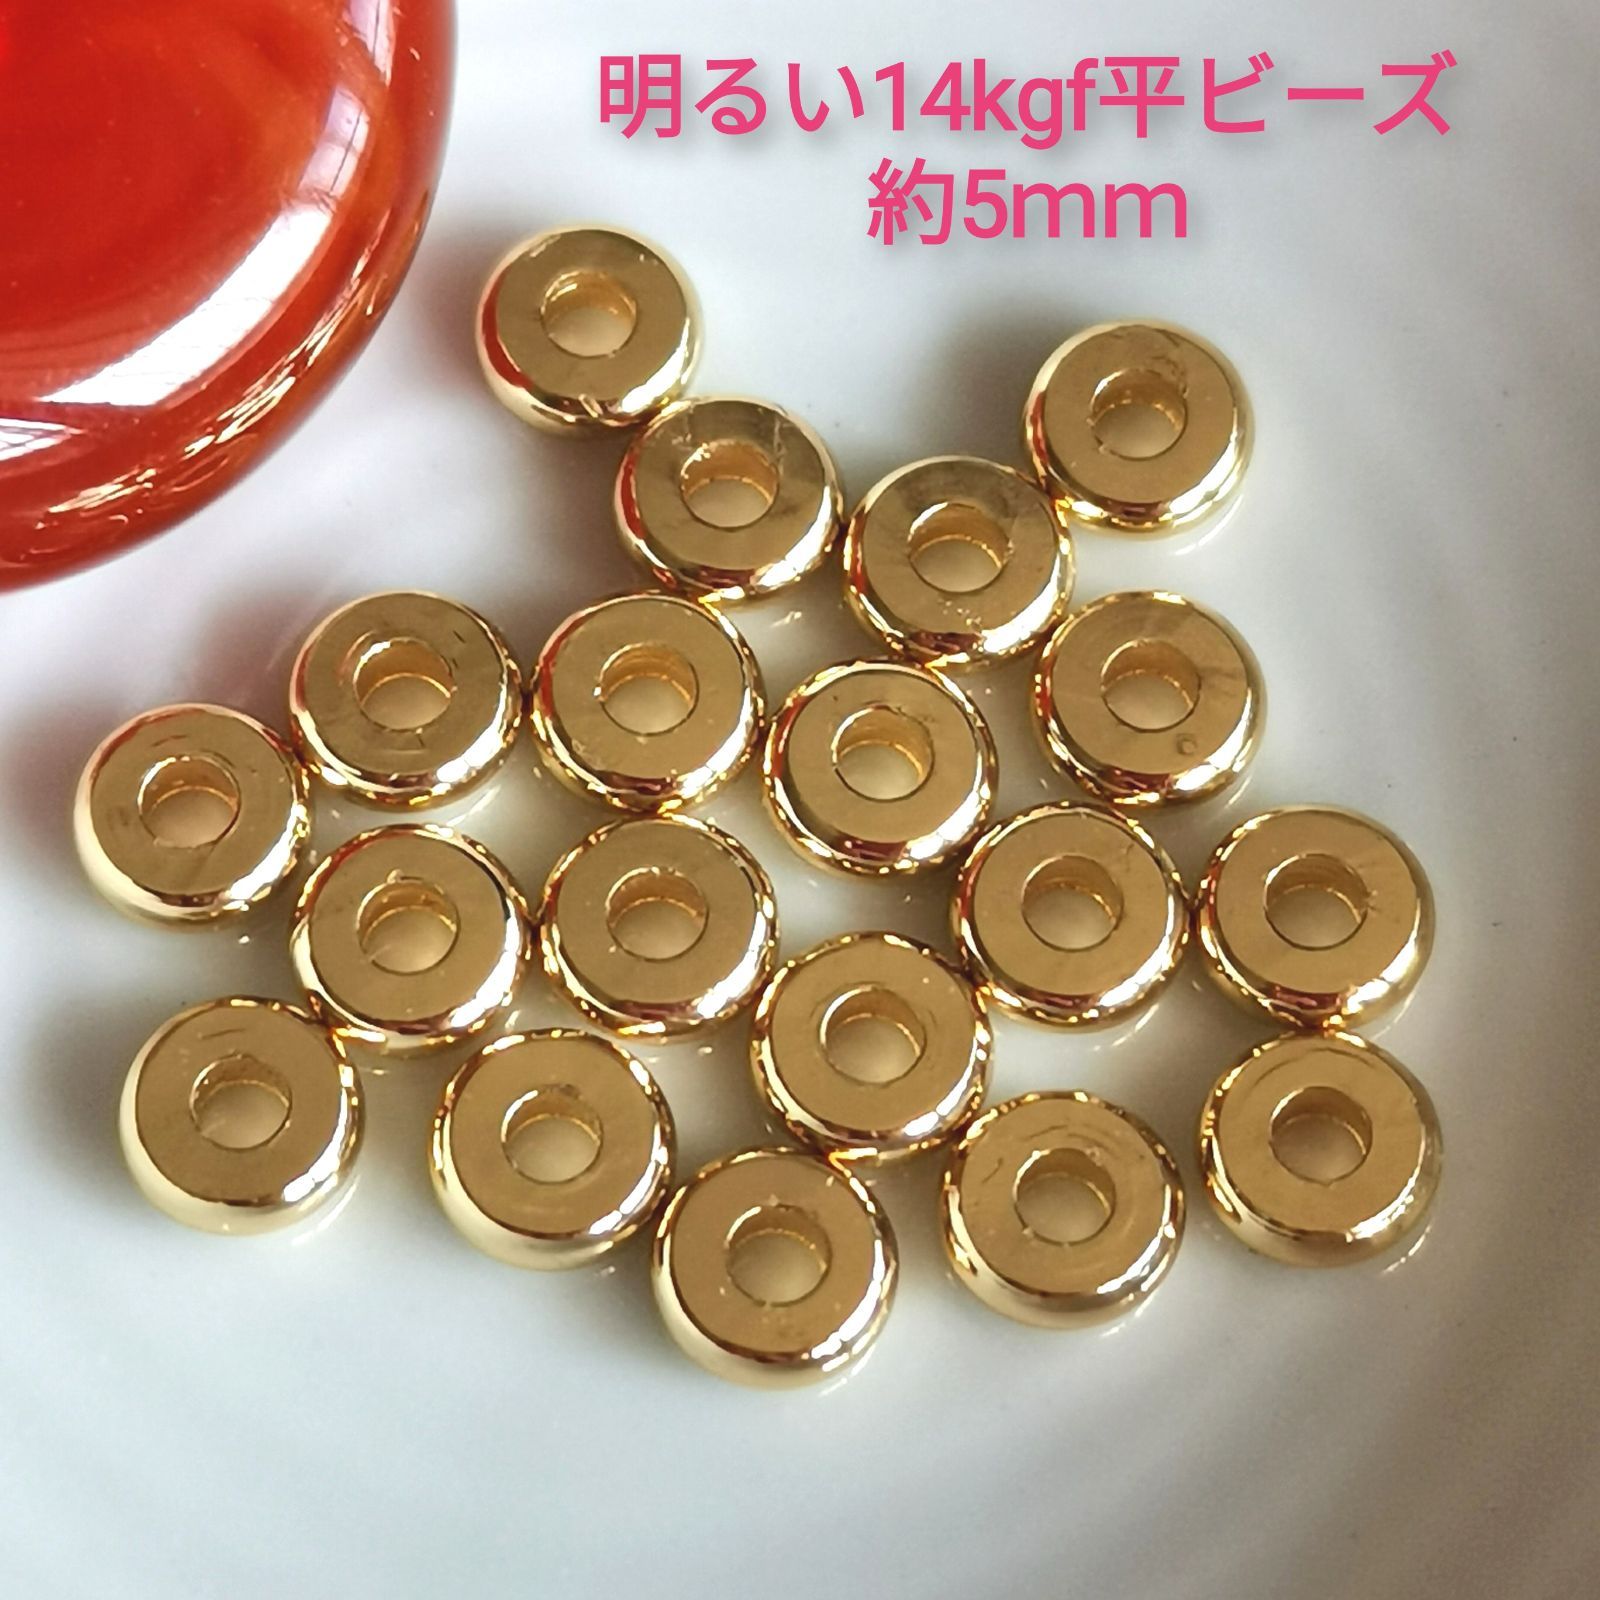 高品質【美品】ゴールド14kgf平ビーズ 約5mm100個 - smile燦燦 - メルカリ